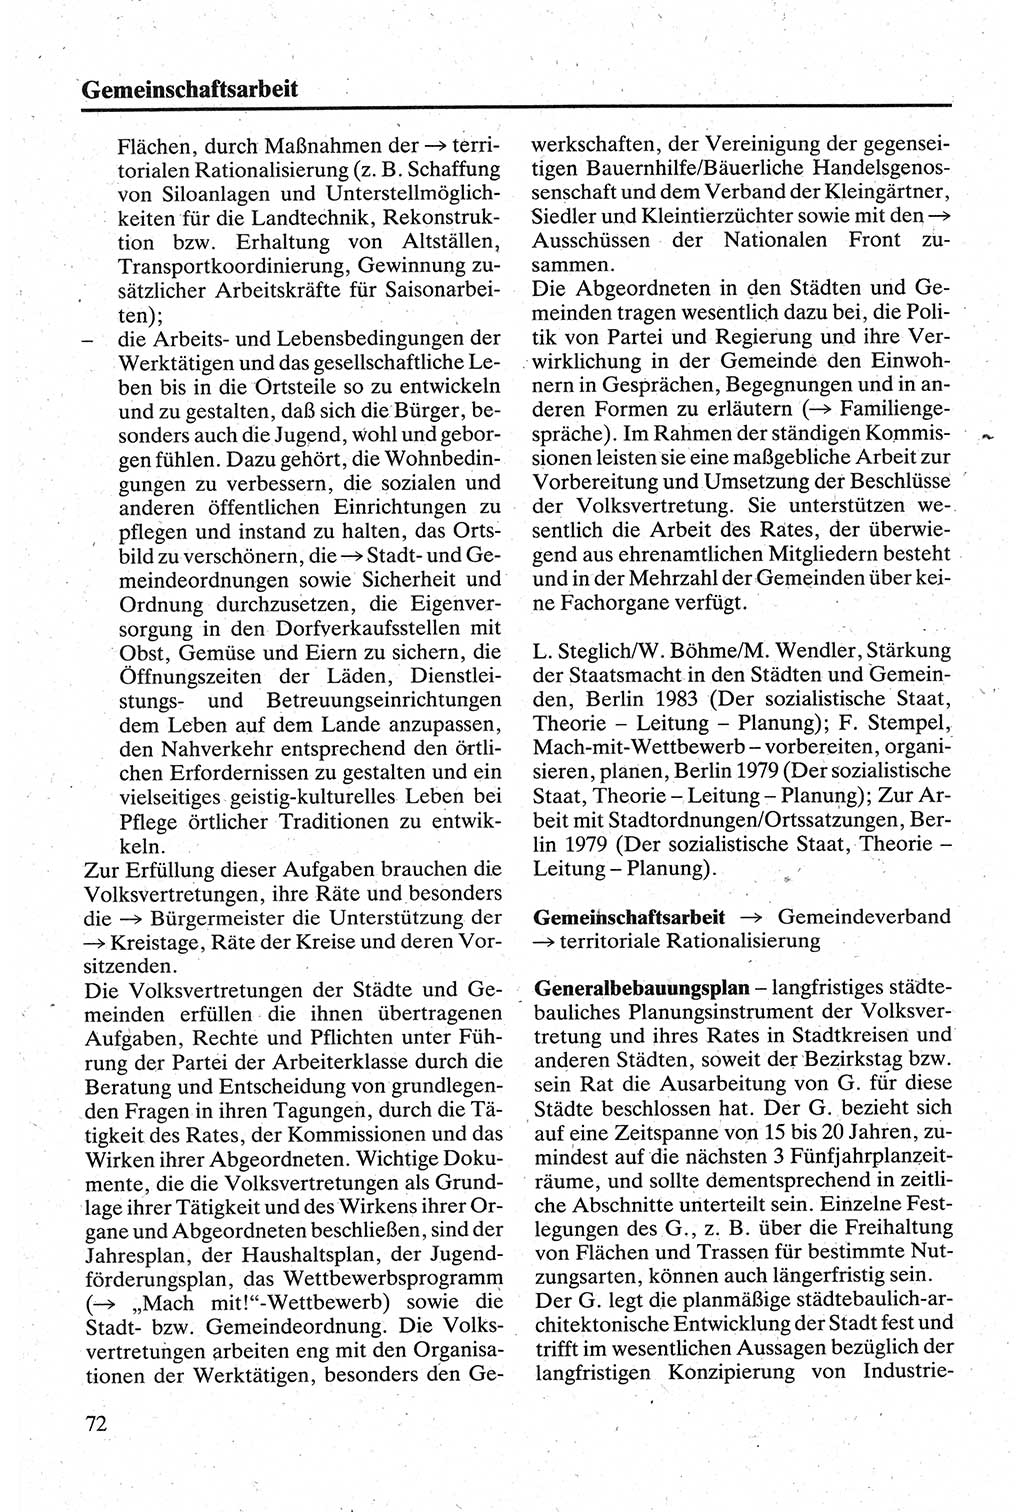 Handbuch für den Abgeordneten [Deutsche Demokratische Republik (DDR)] 1984, Seite 72 (Hb. Abg. DDR 1984, S. 72)